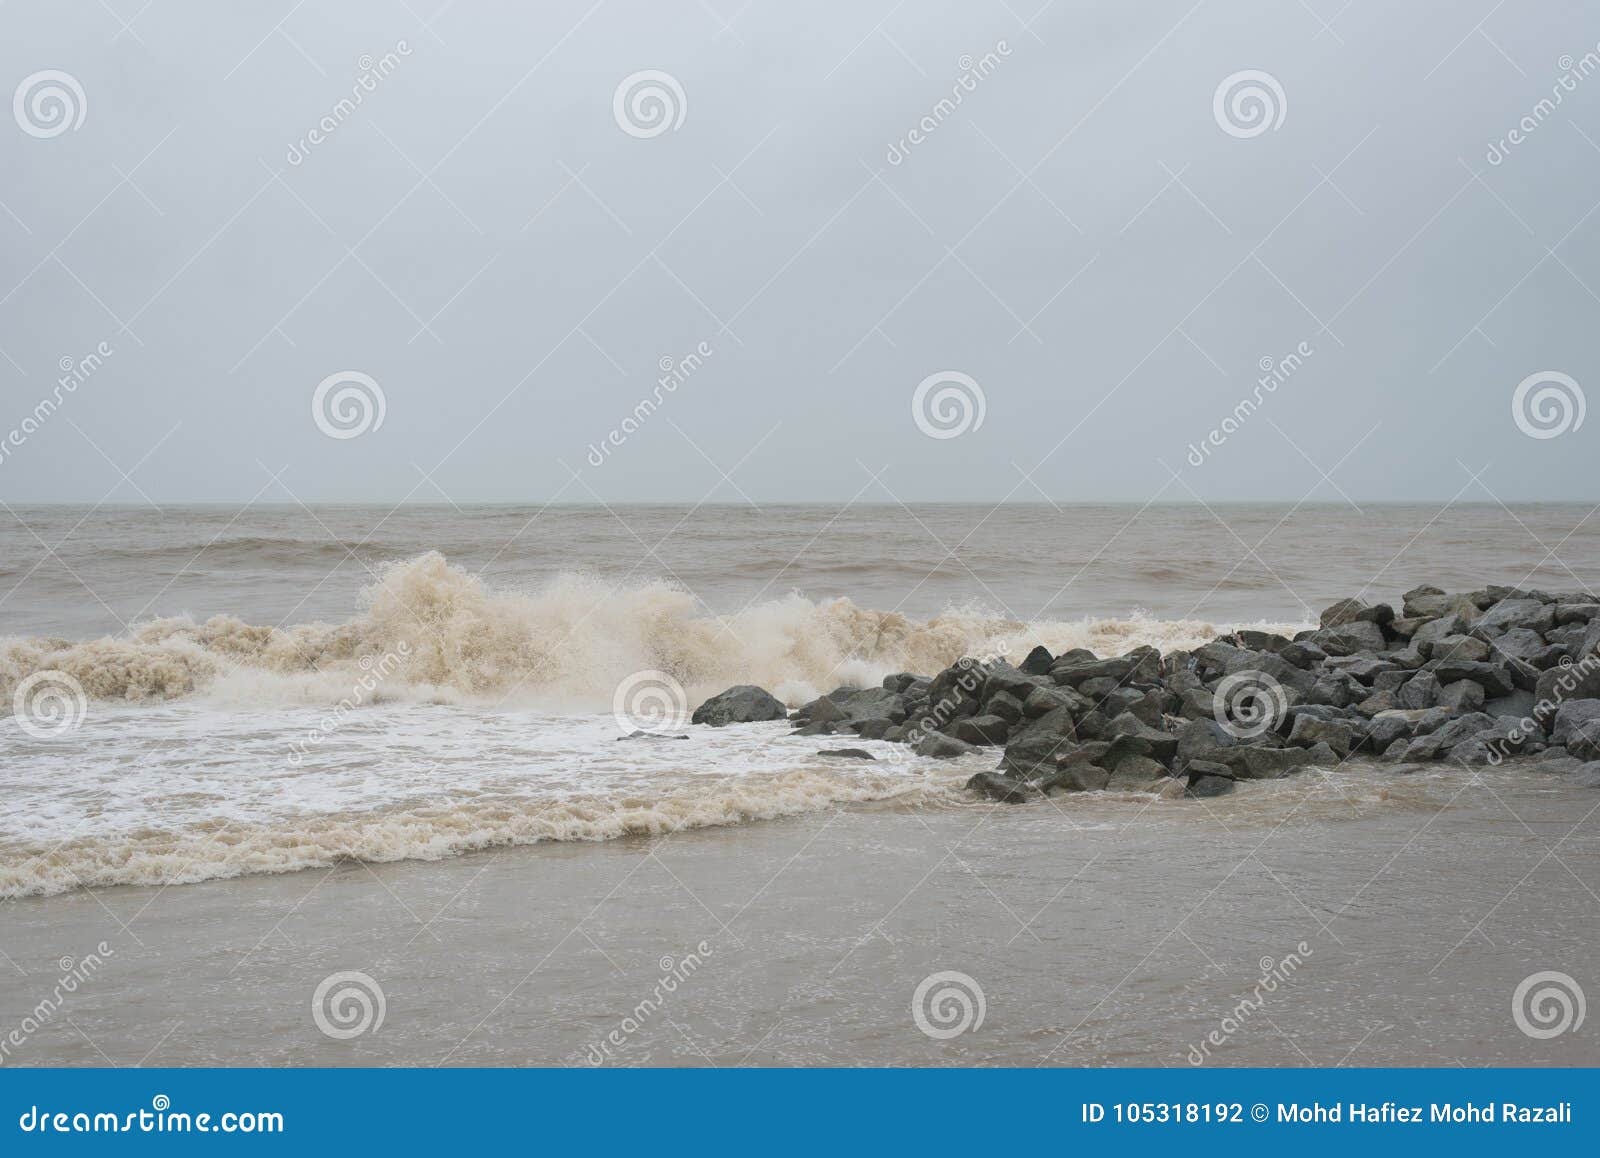 big waves at pantai cinta berahi beach locates in kota bharu, kelantan, malaysia